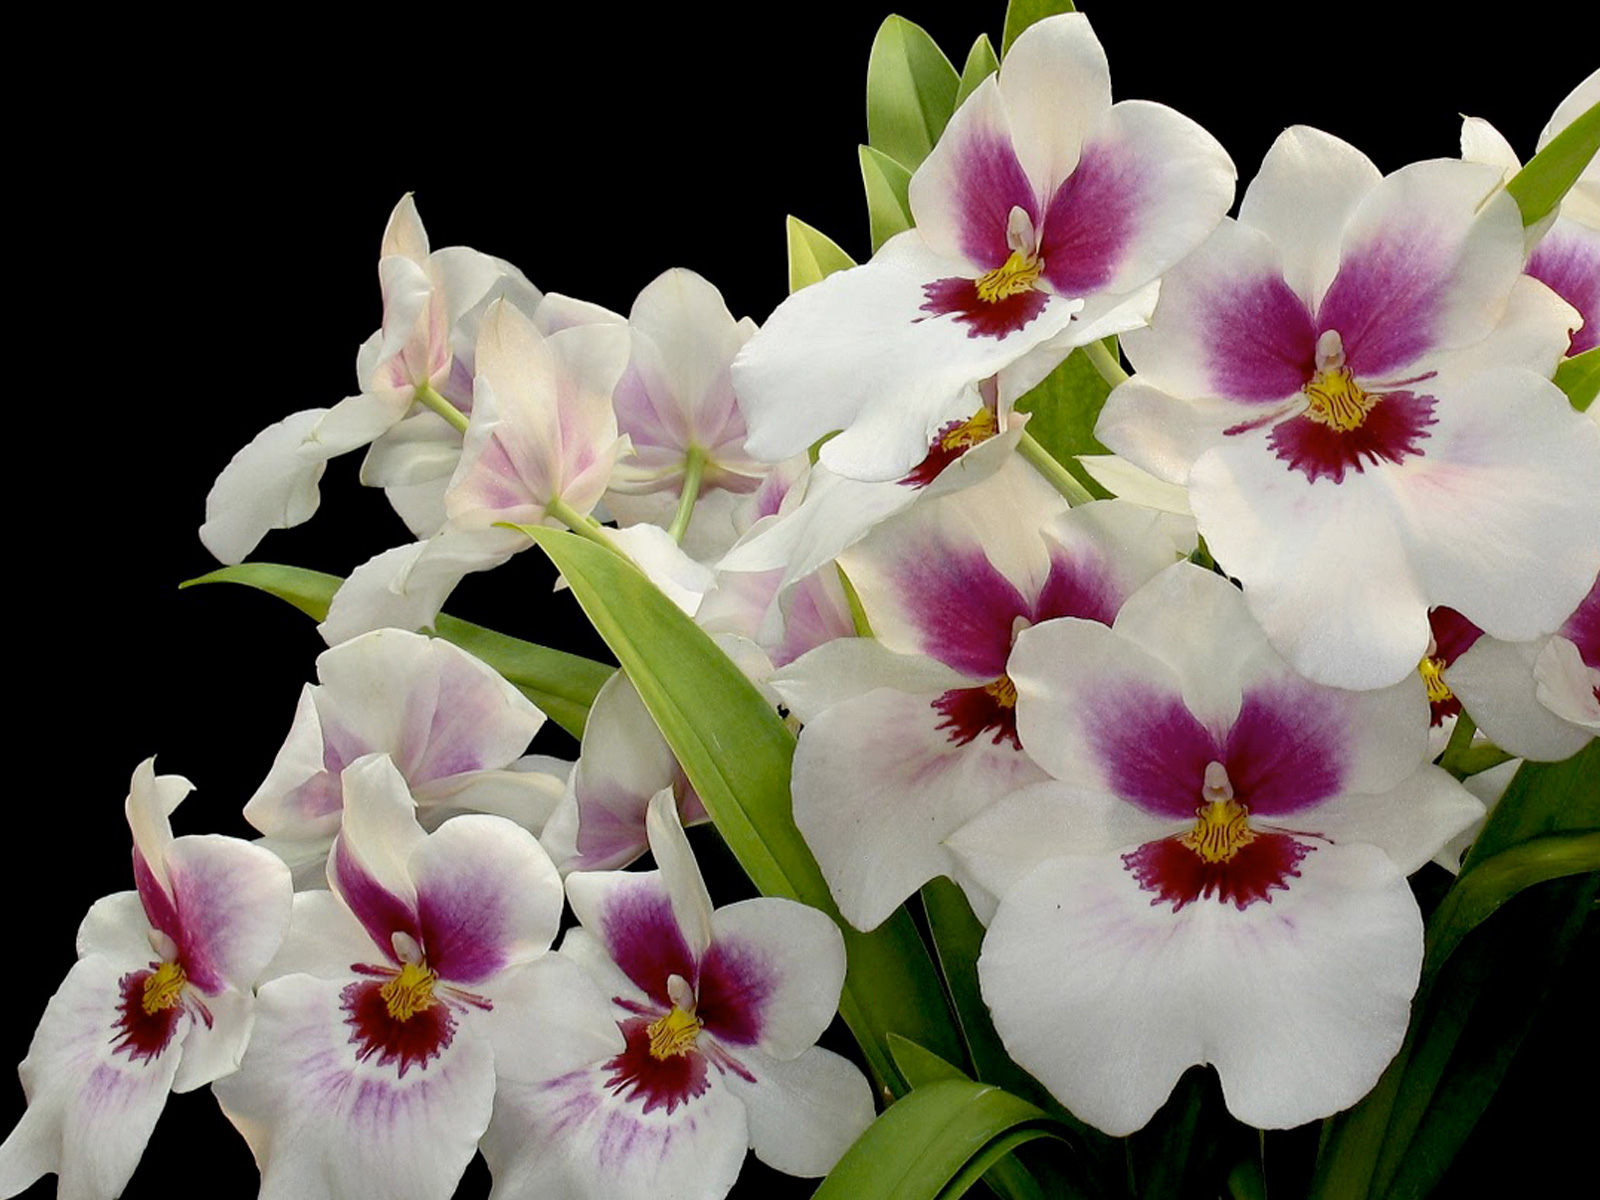 Orquídea, flor bella y milenaria | Secretaría de Agricultura, Ganadería